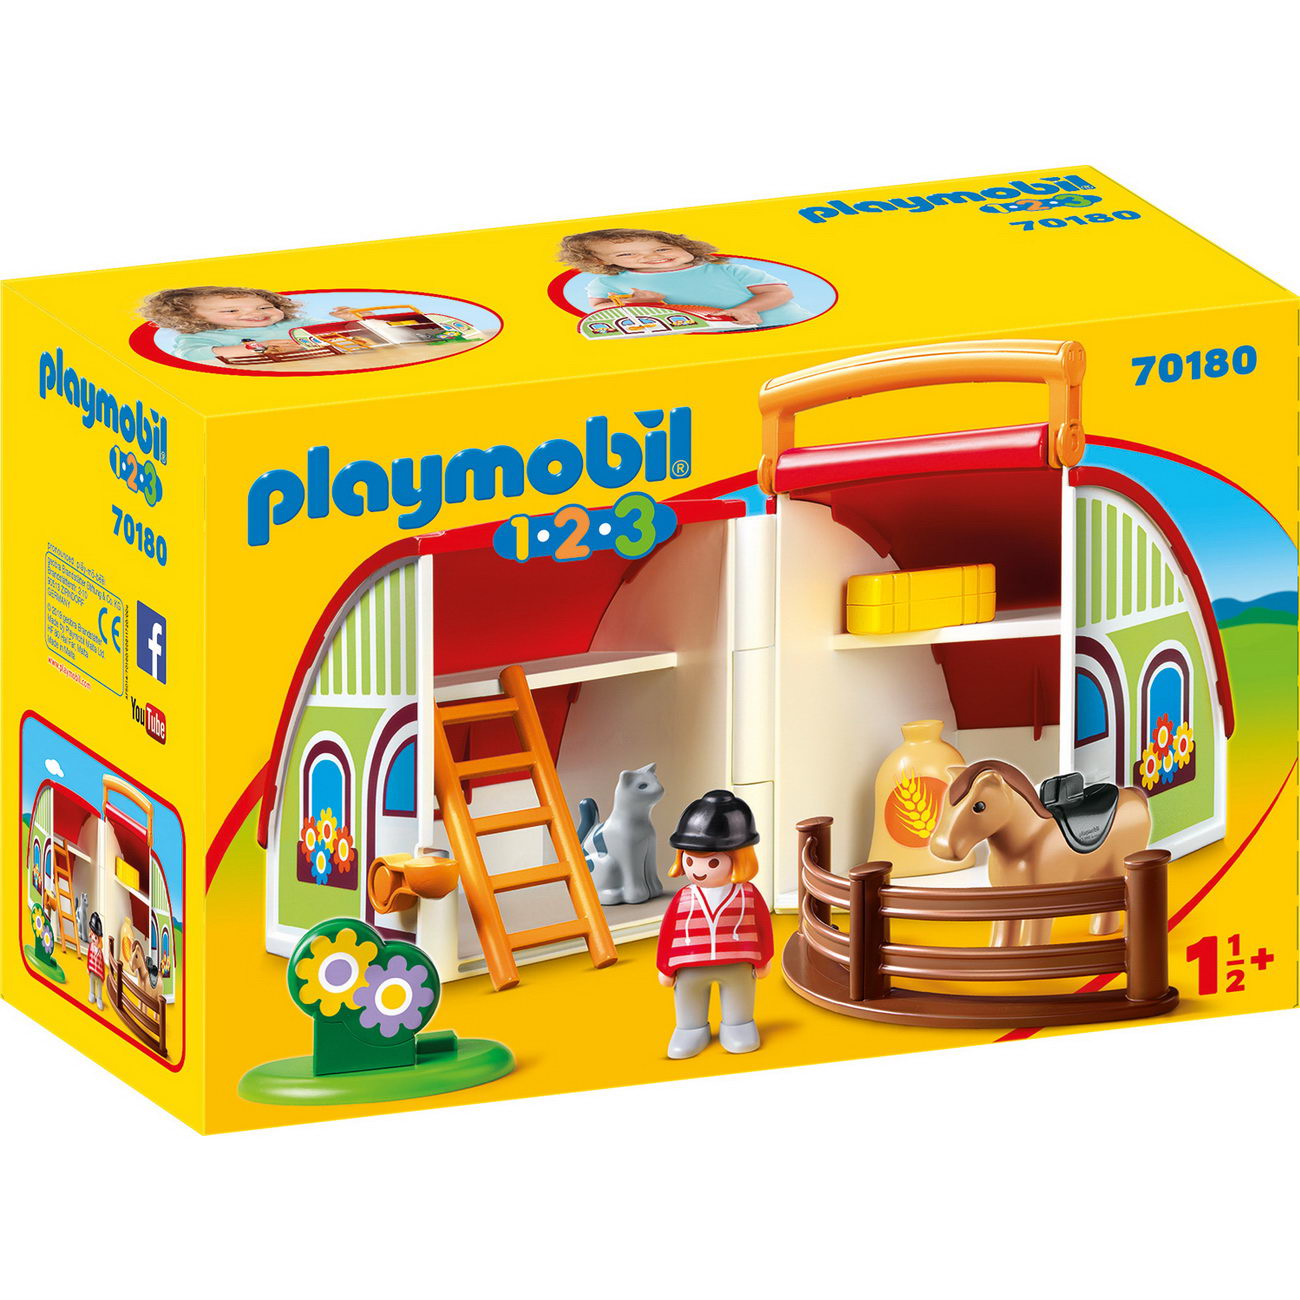 Playmobil 70180 - Mein Mitnehm-Reiterhof (1 2 3)